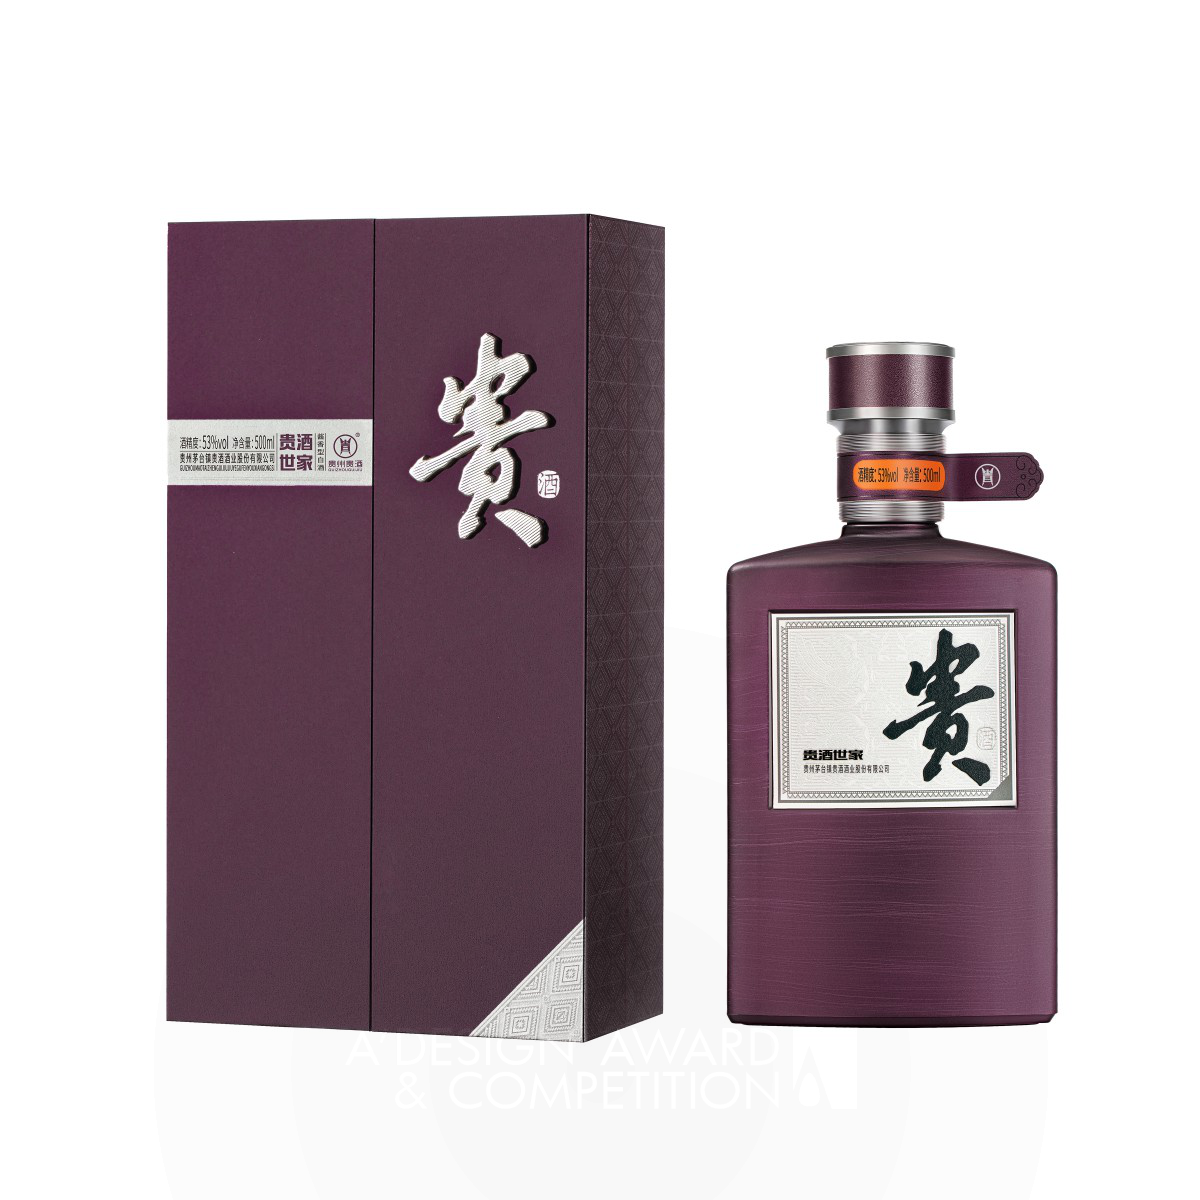 Gui Jiu Shi Jia Alcoholic Beverage Packaging by Yunlin Dai and Weiliang Tao Iron Packaging Design Award Winner 2023 